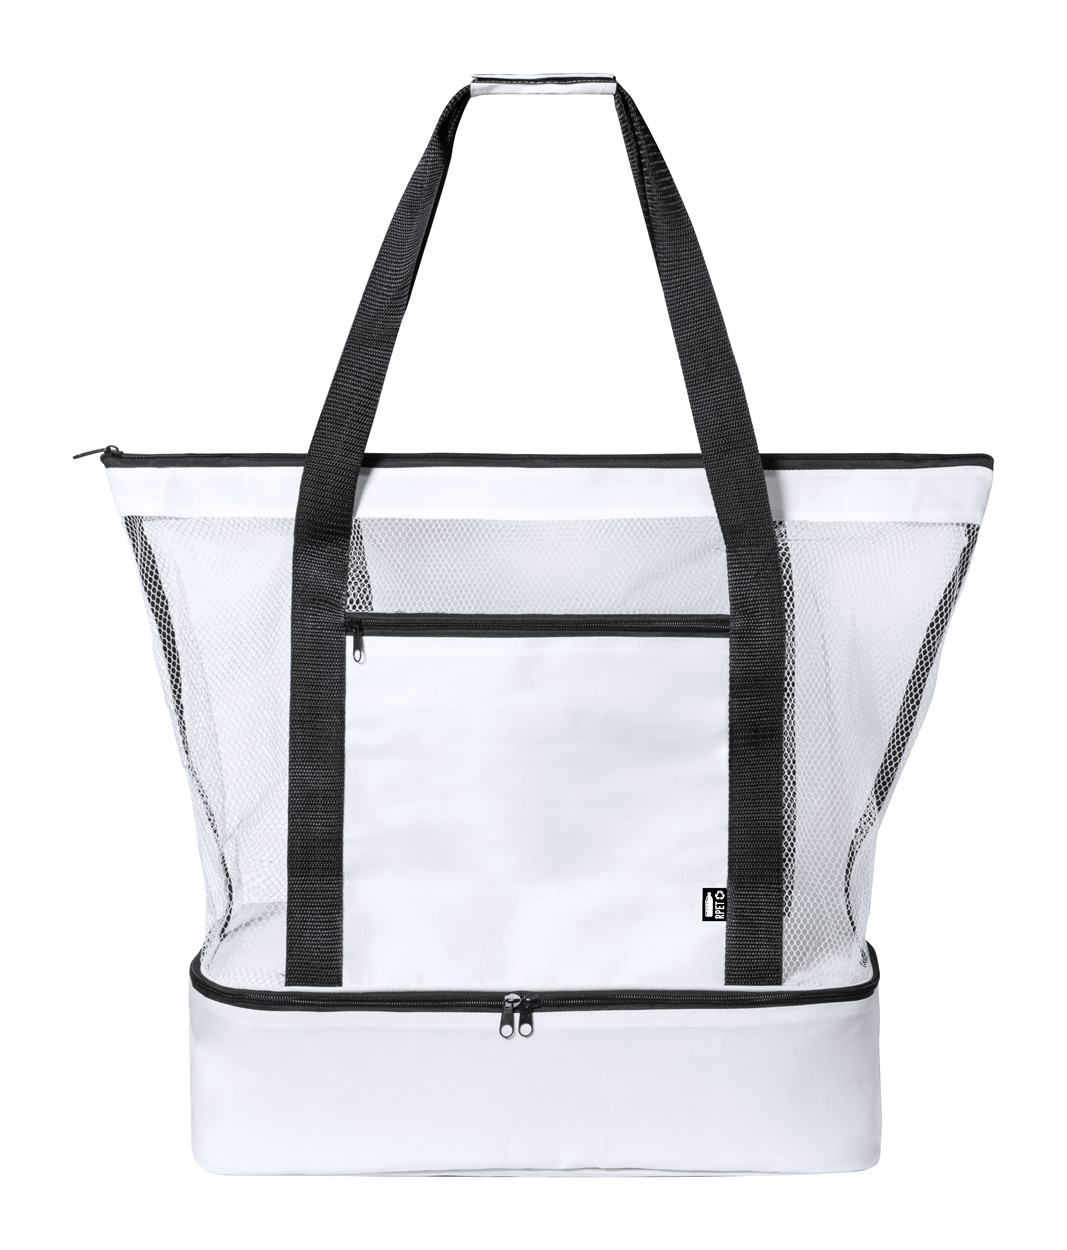 Pattel RPET Cooler Shopping Bag - white